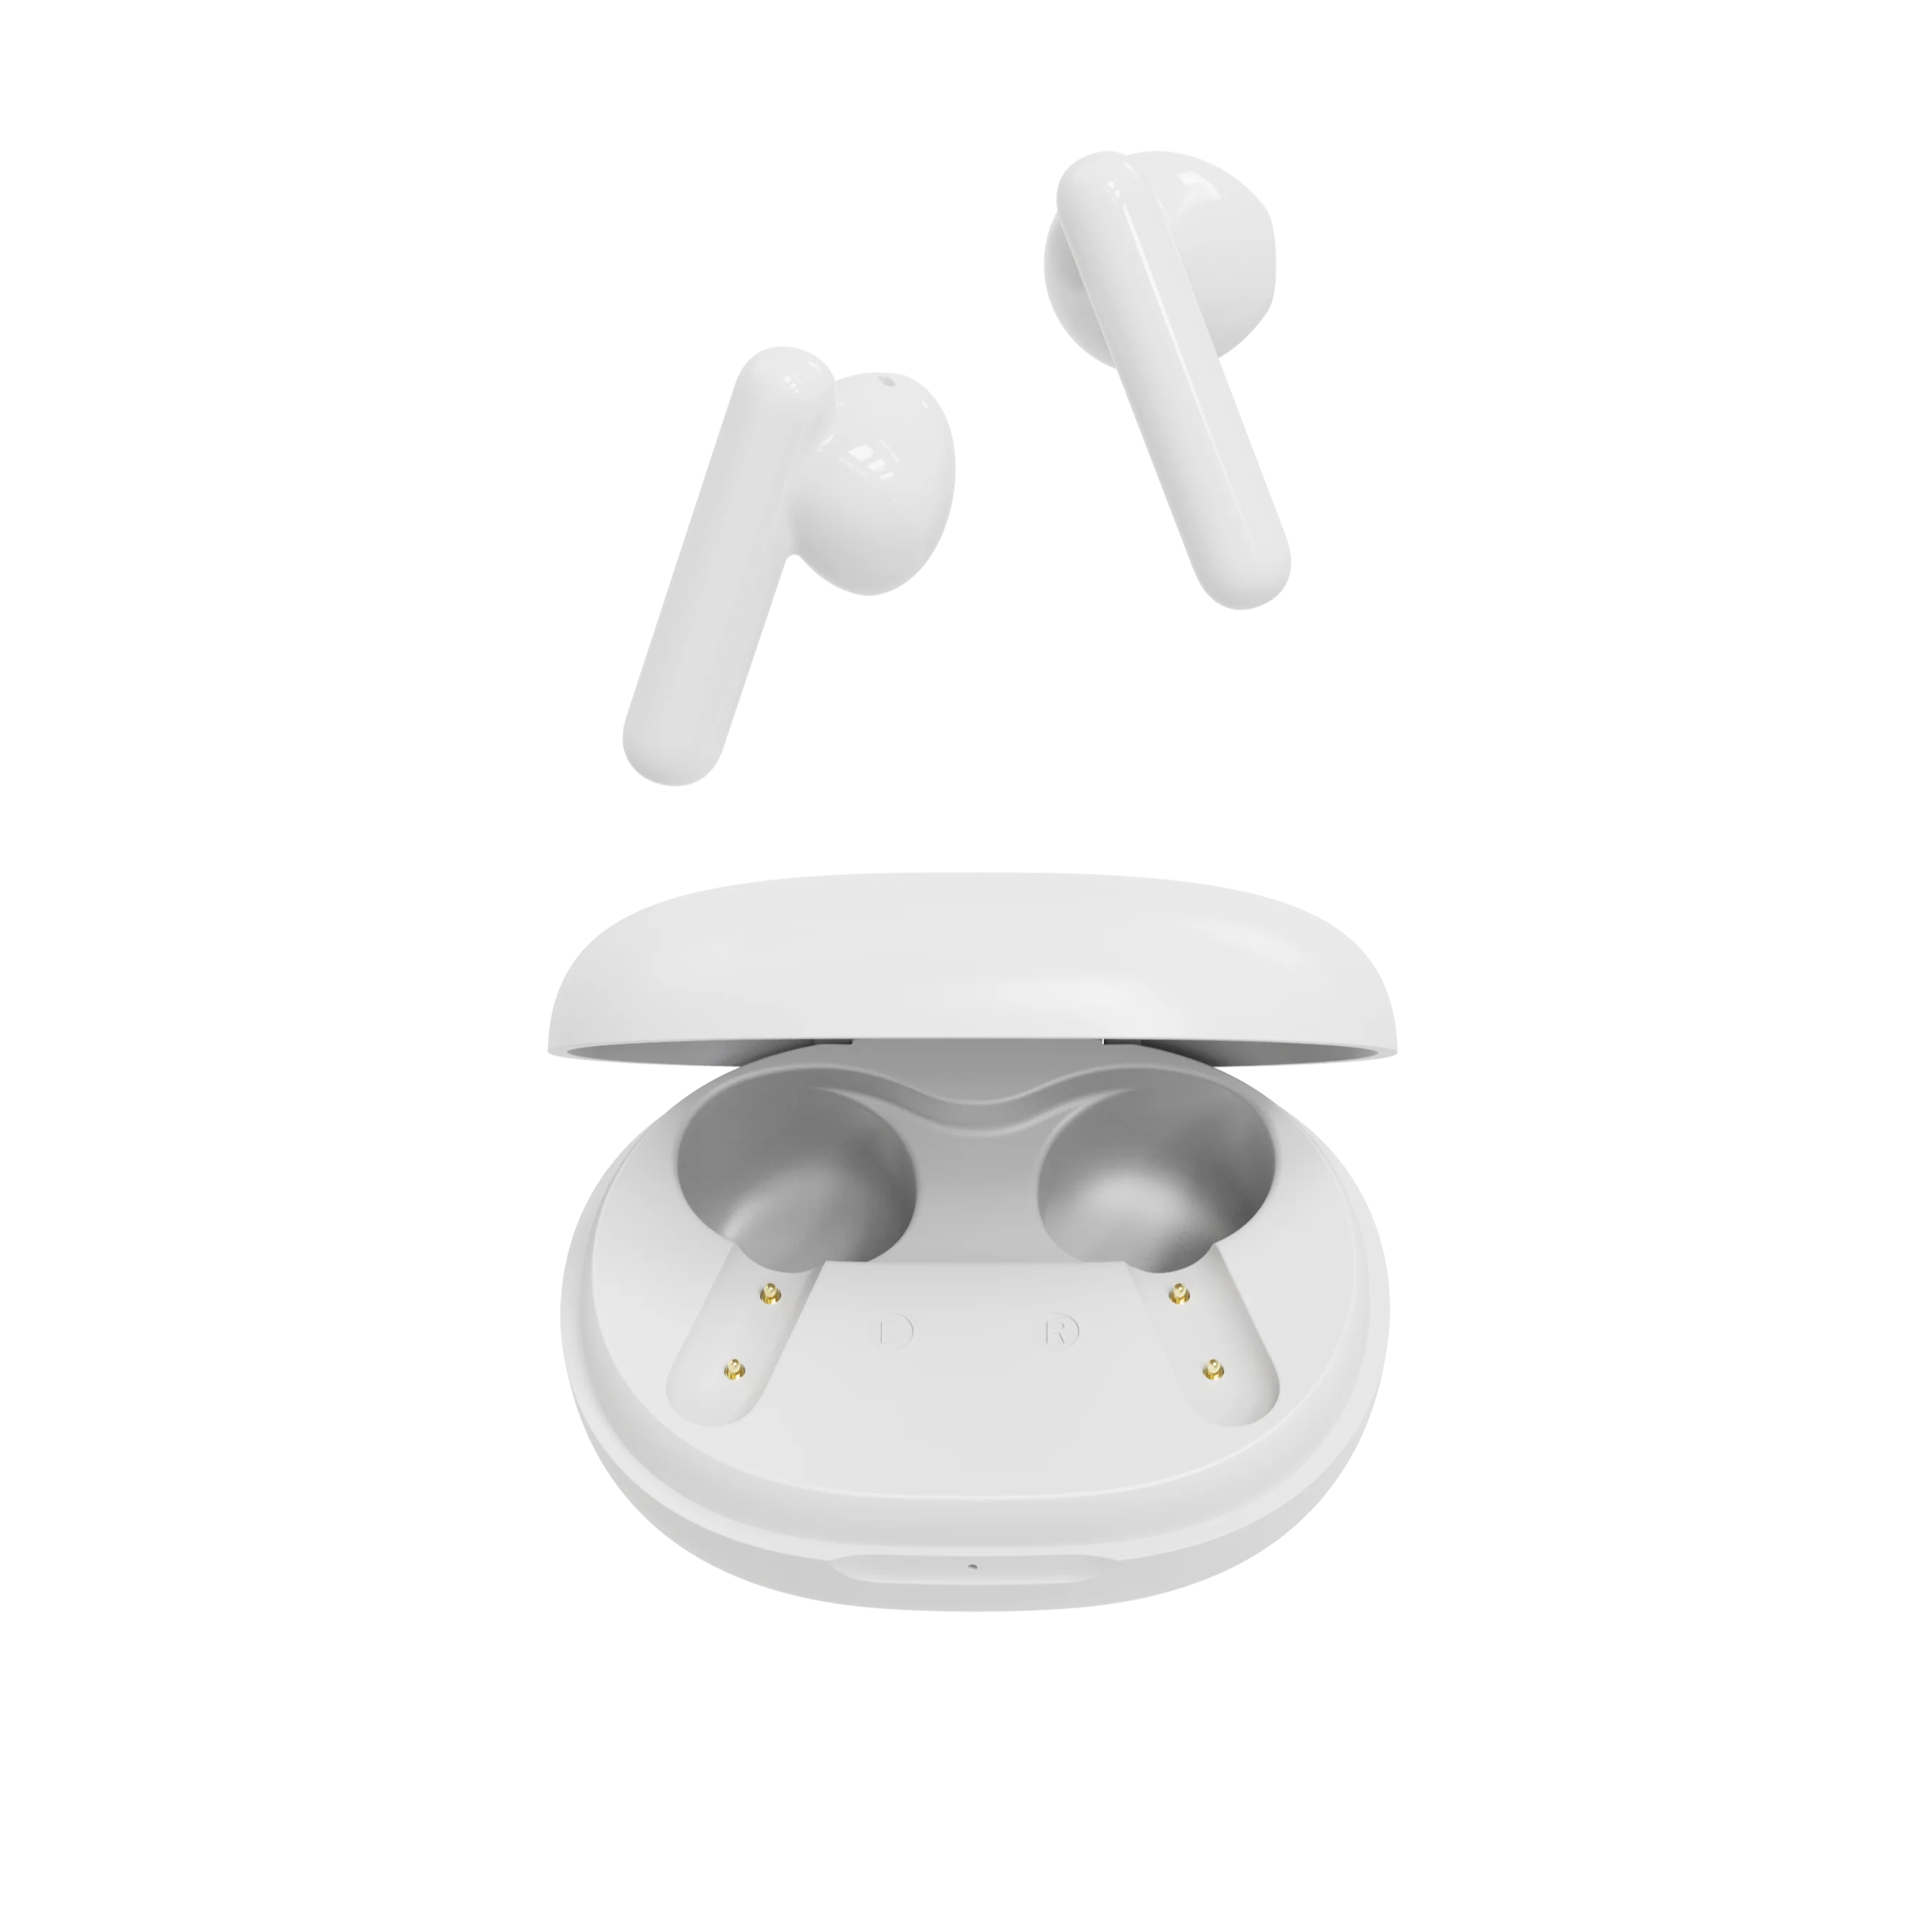 

Topjoy Tws Earbuds Ear Wireless Earbud Promotional Waterproof Ipx4 Ear Buds Noise Cancelling Earphones 5.0 Earphone BT